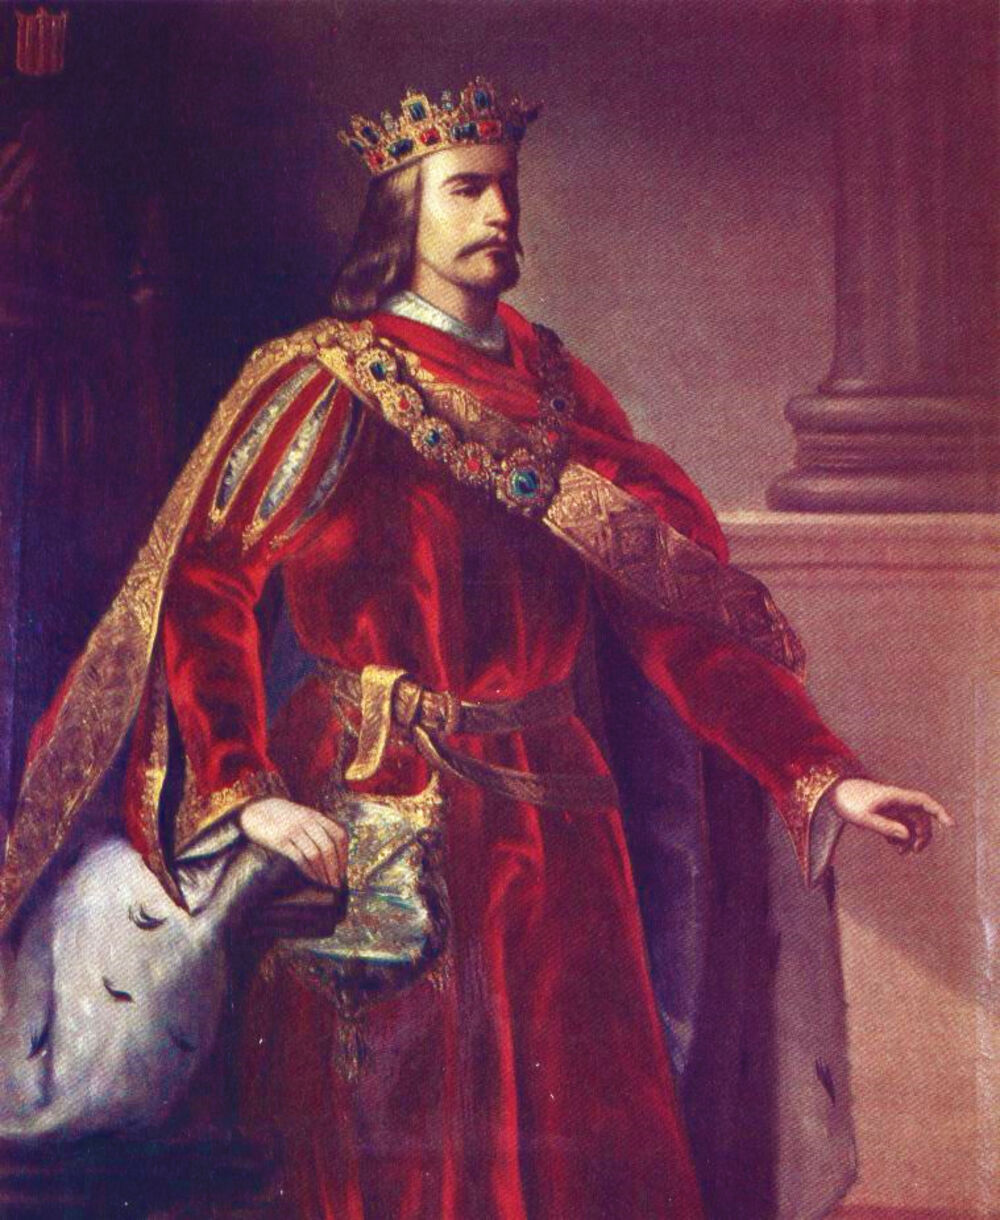  Alfonso IV